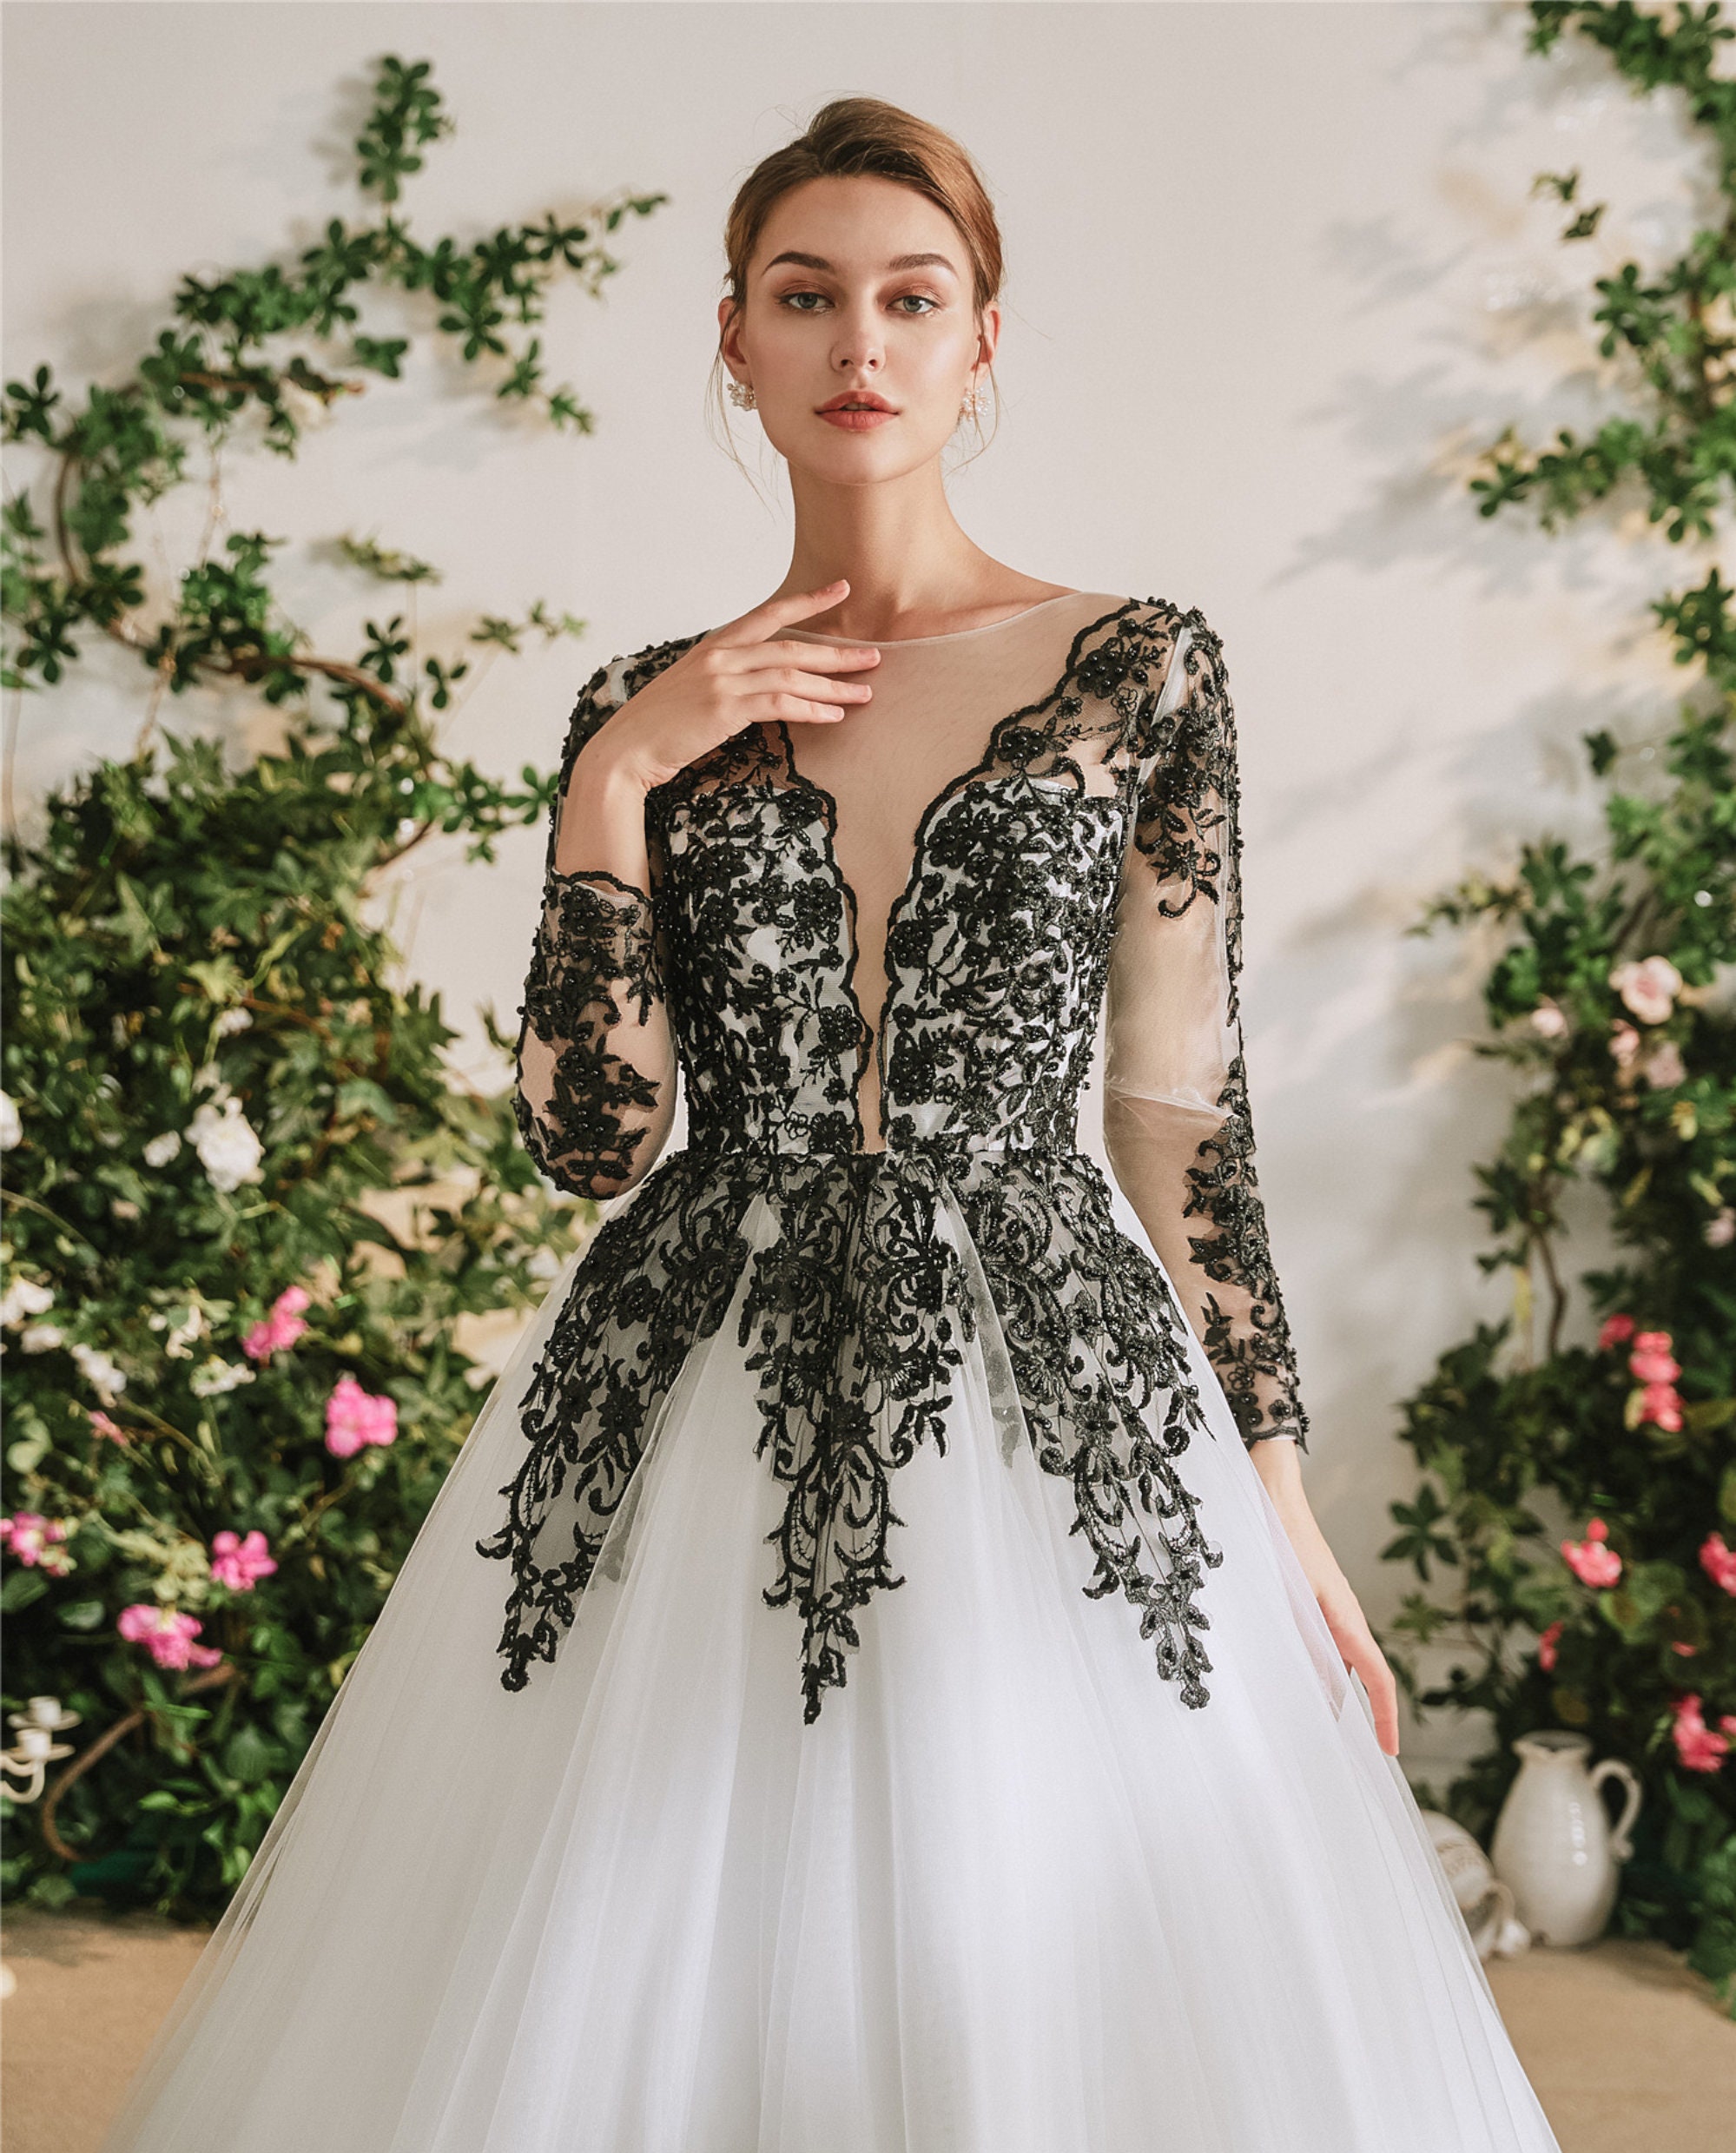 Unusual Beautiful Black & Ivory White Gothic Ball Gown Wedding - Etsy UK